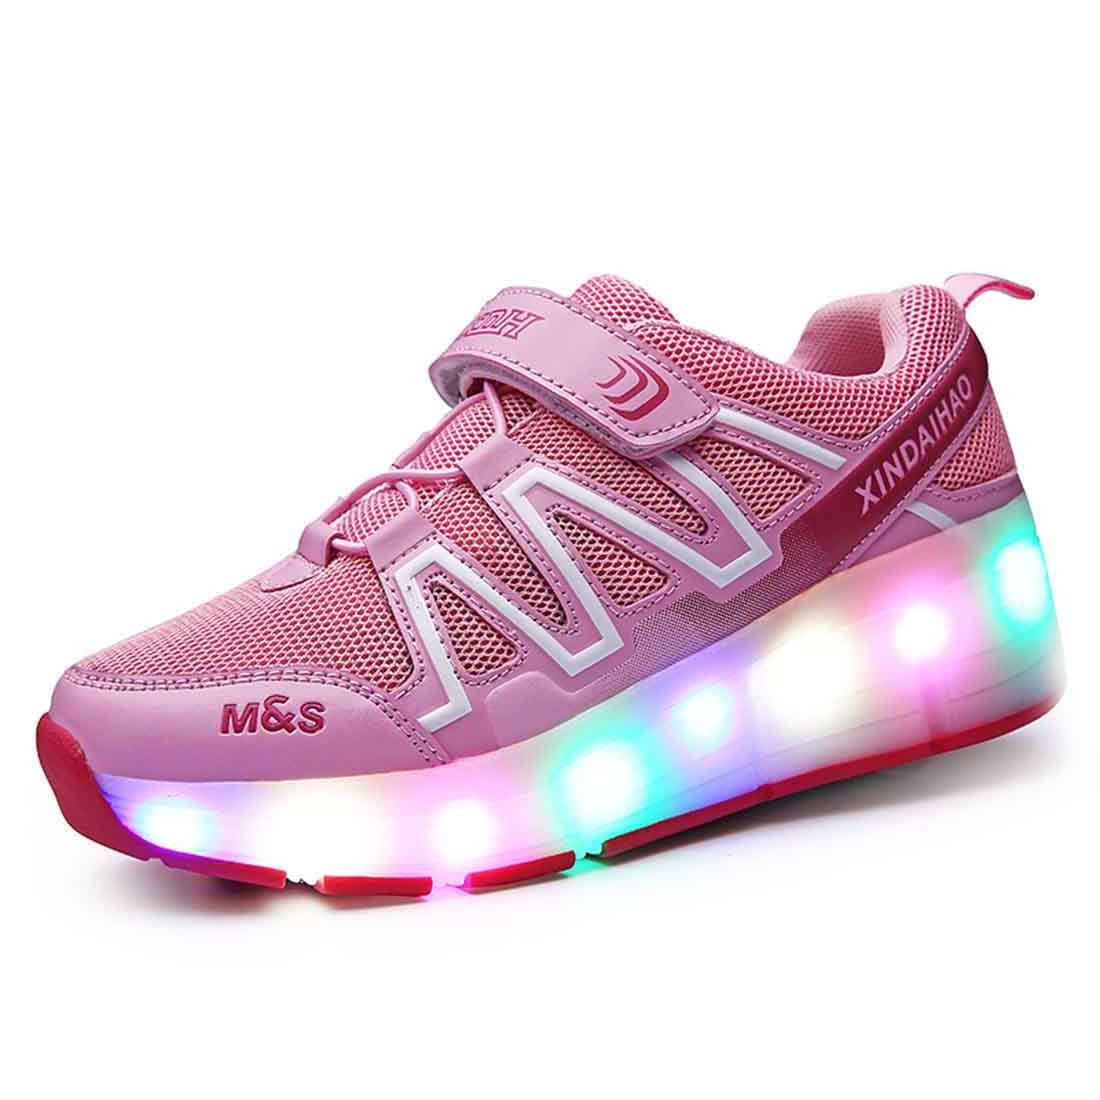 Light up Roller Shoes - kids